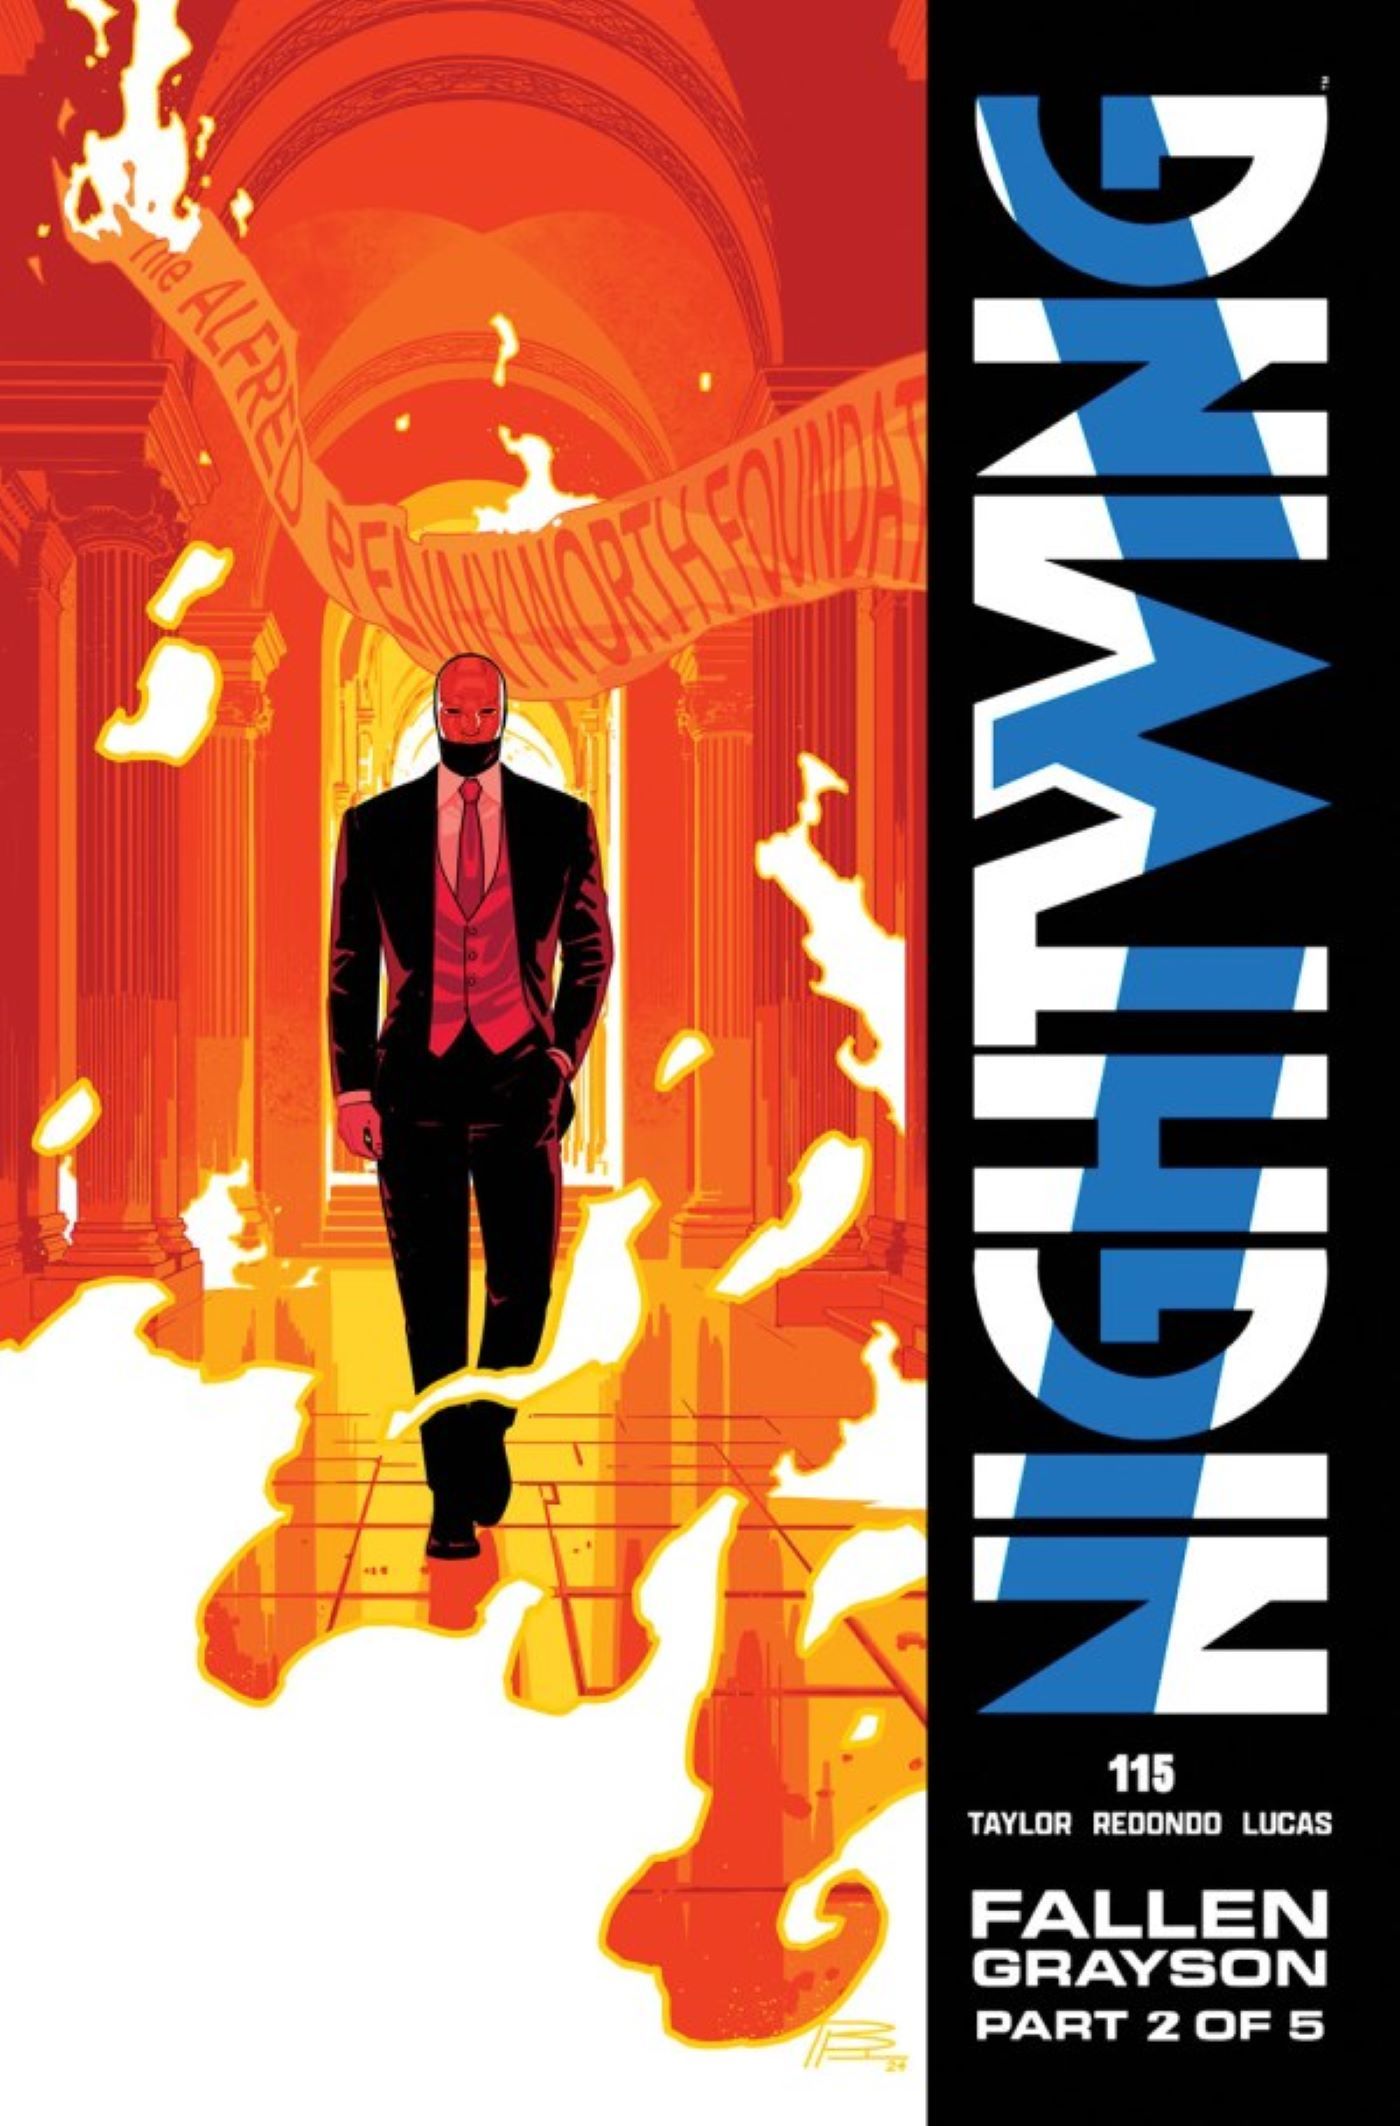 Capa principal do Nightwing 115: Heartless caminhando em um prédio em chamas.